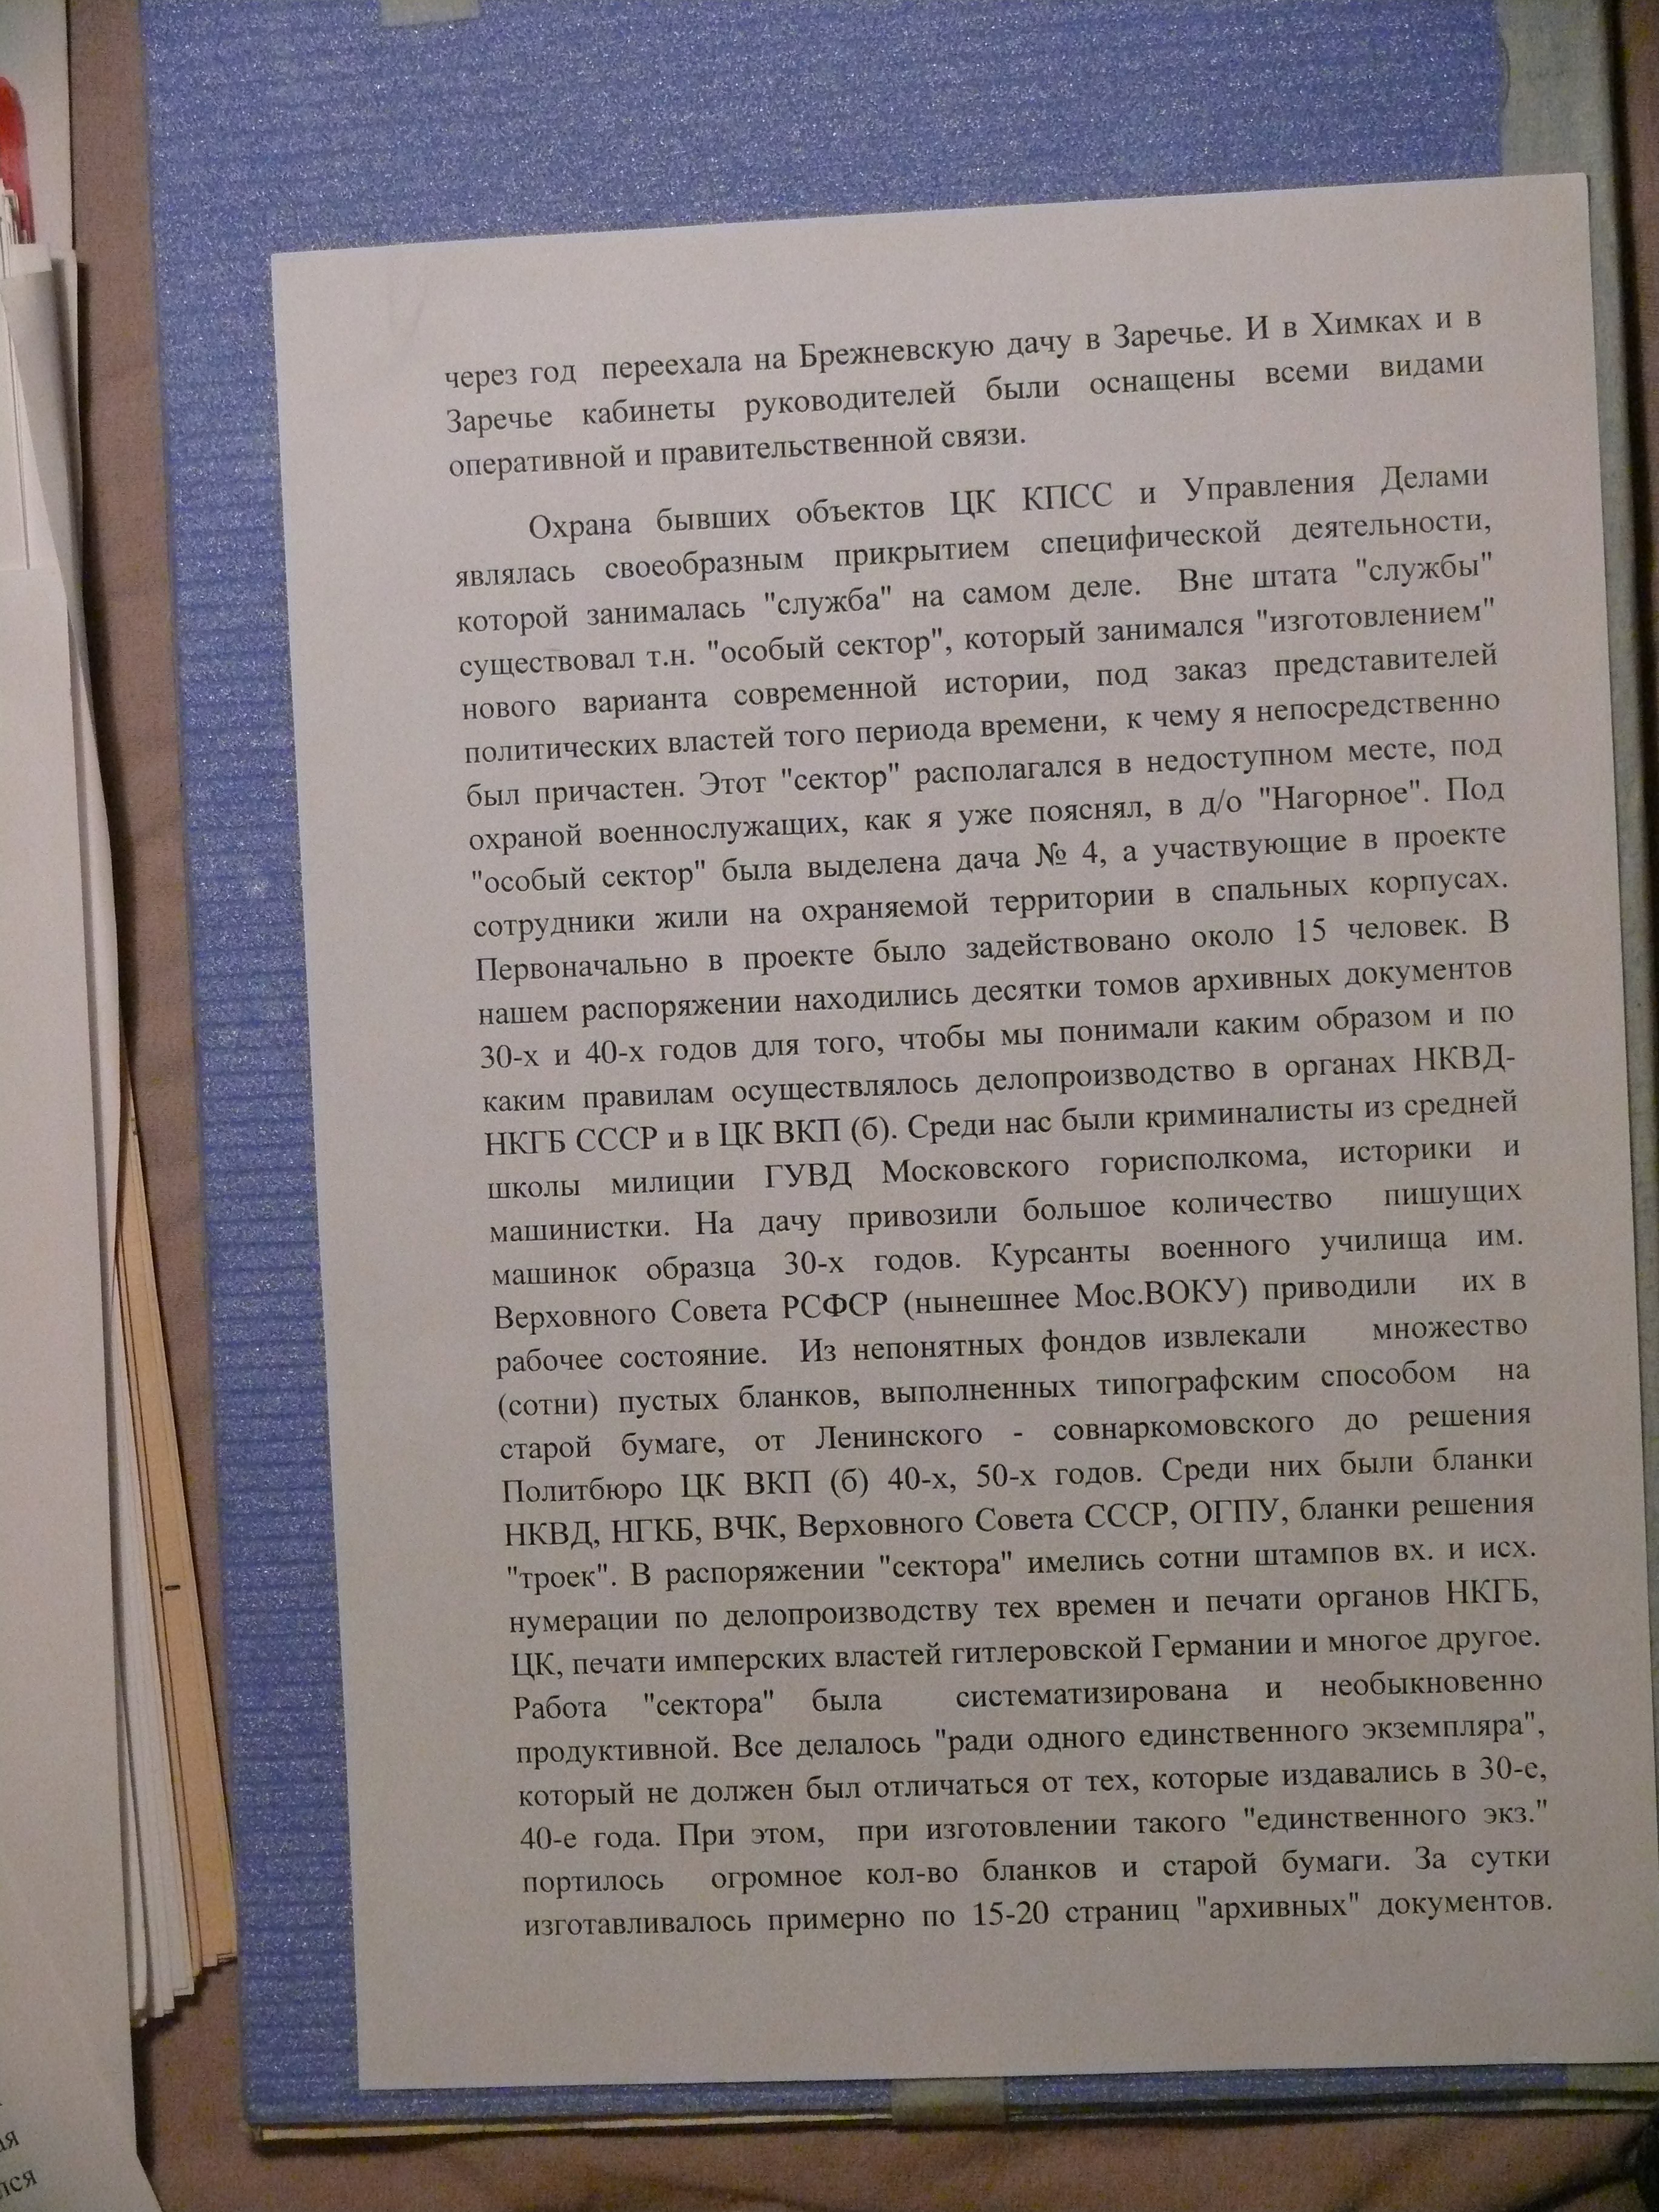 Фальсификация архивов СССР 2